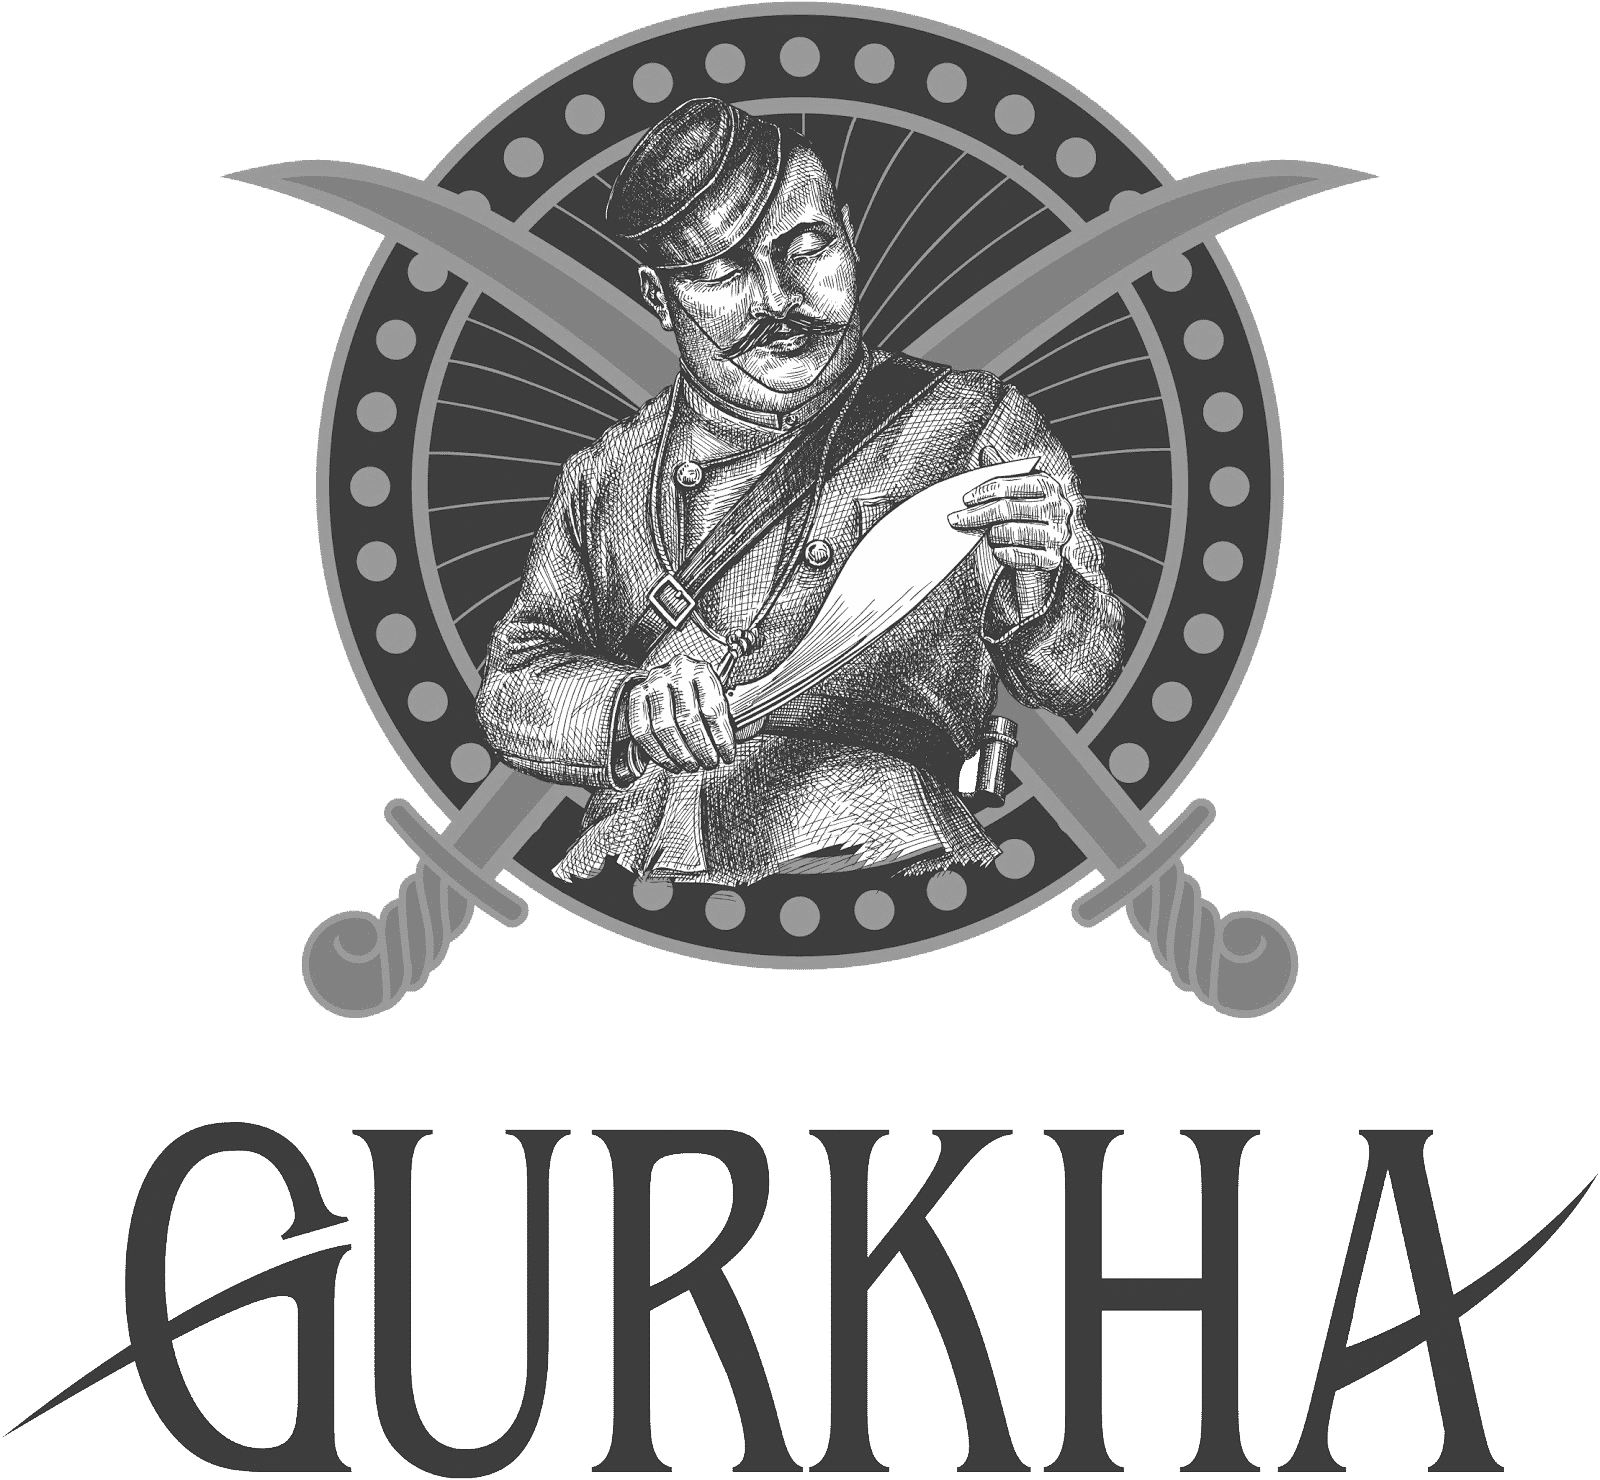 Gurkha Cigars logo grey